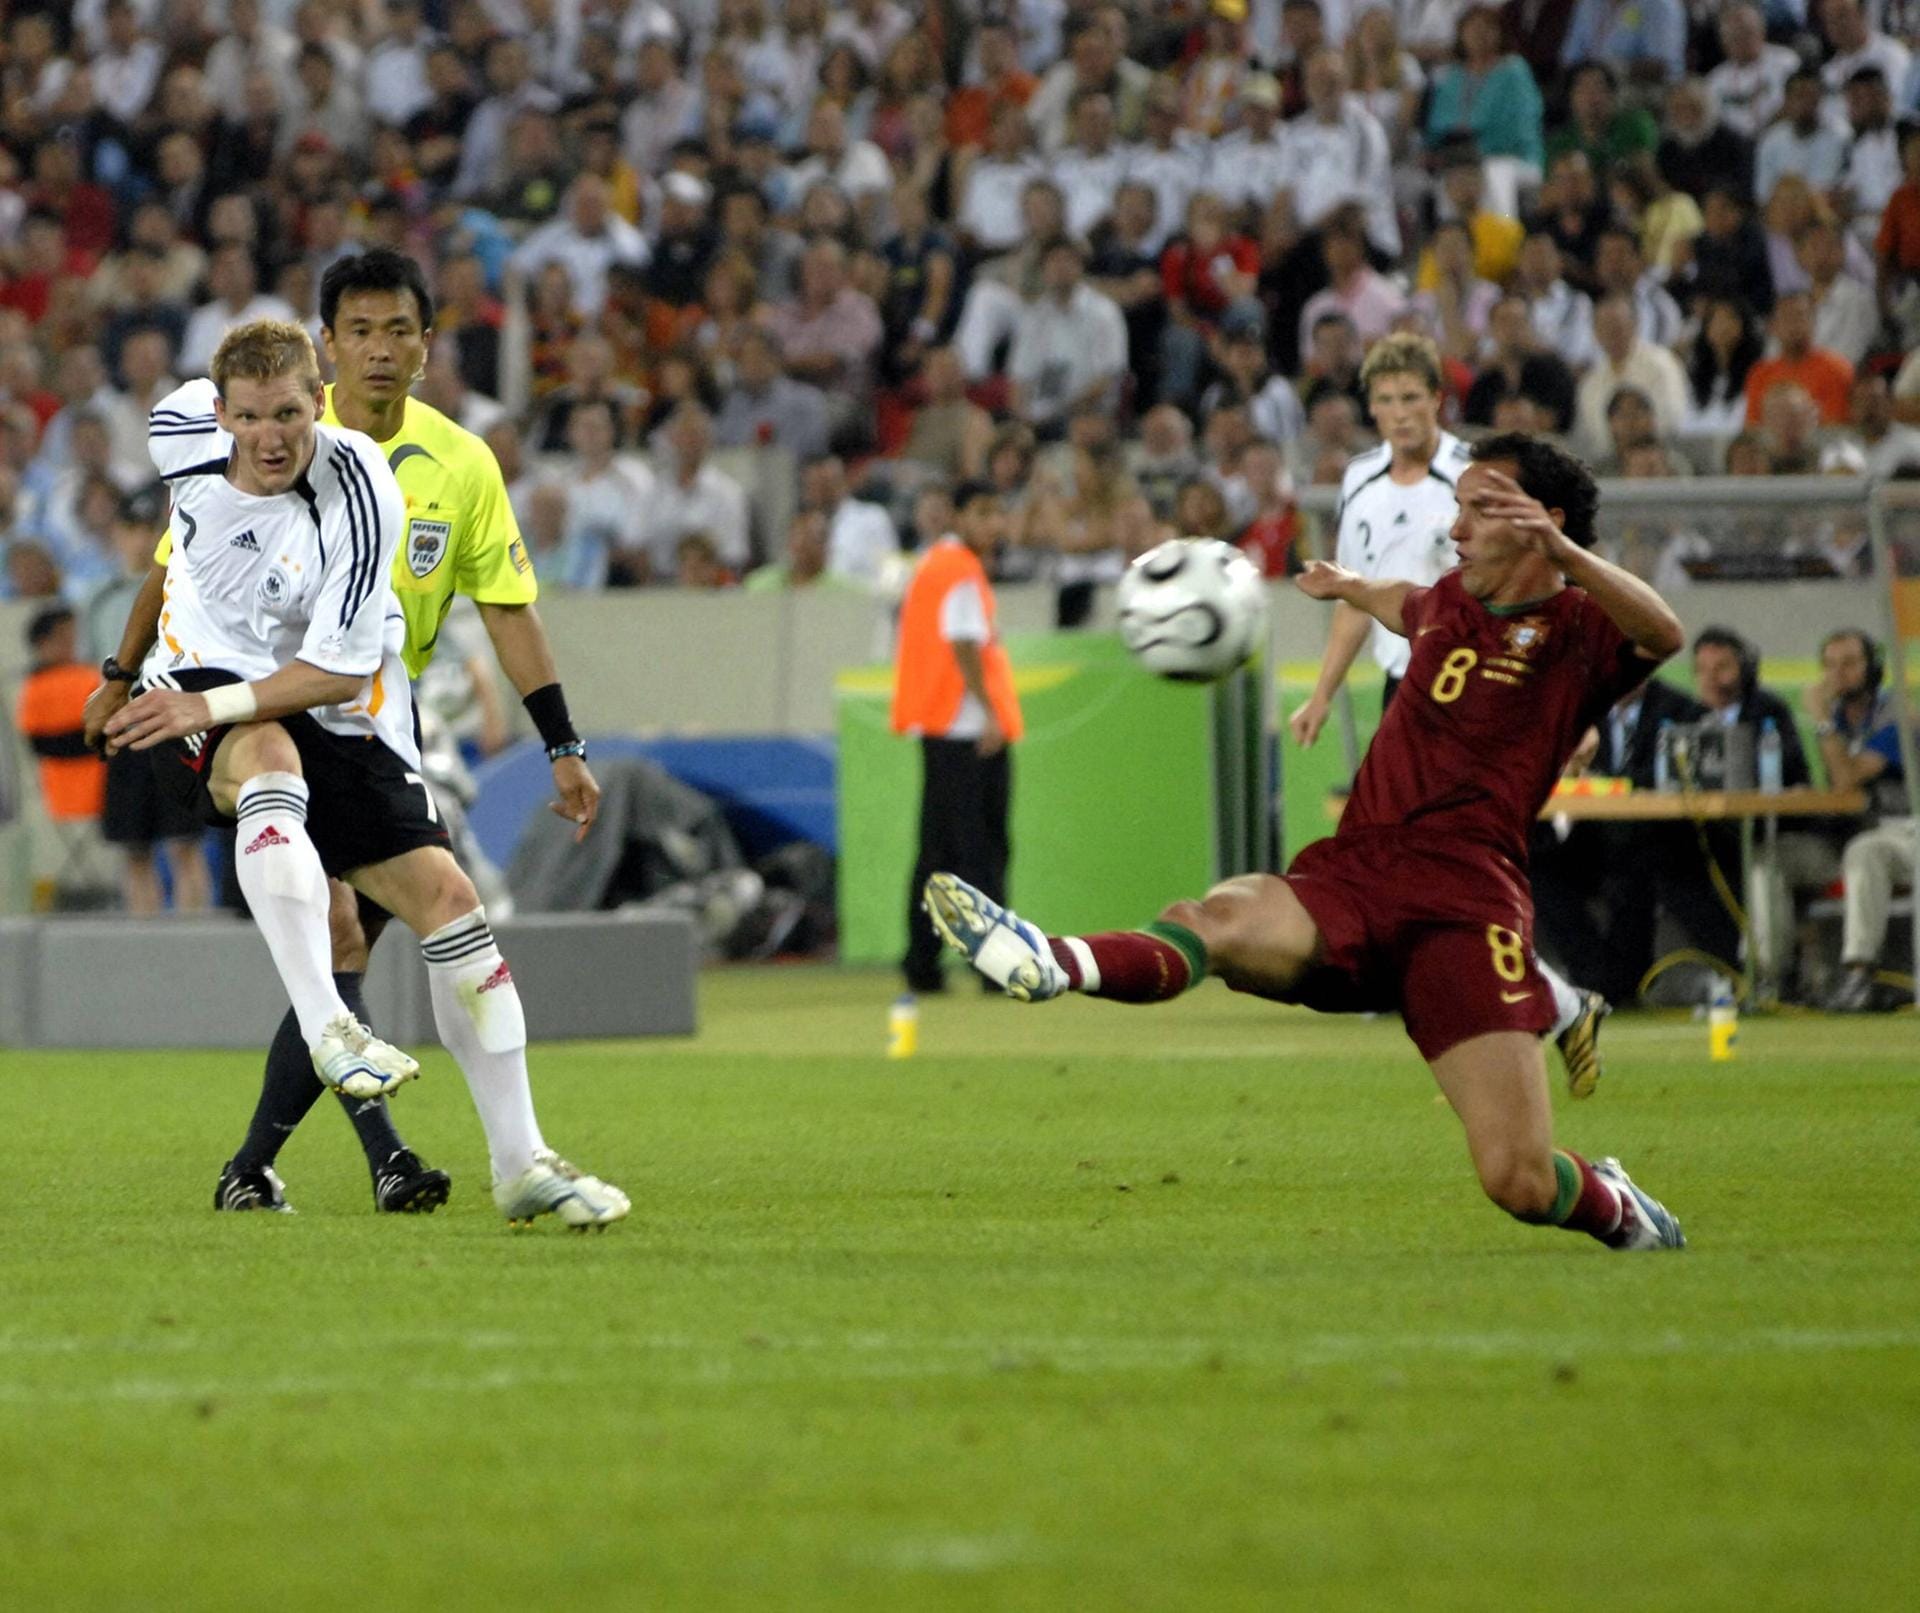 WM 2006, Spiel um Platz drei: Deutschland trifft auf Portugal, Schweinsteiger schießt alle drei Tore beim 3:1-Sieg. Ein Treffer ist schöner als der andere.